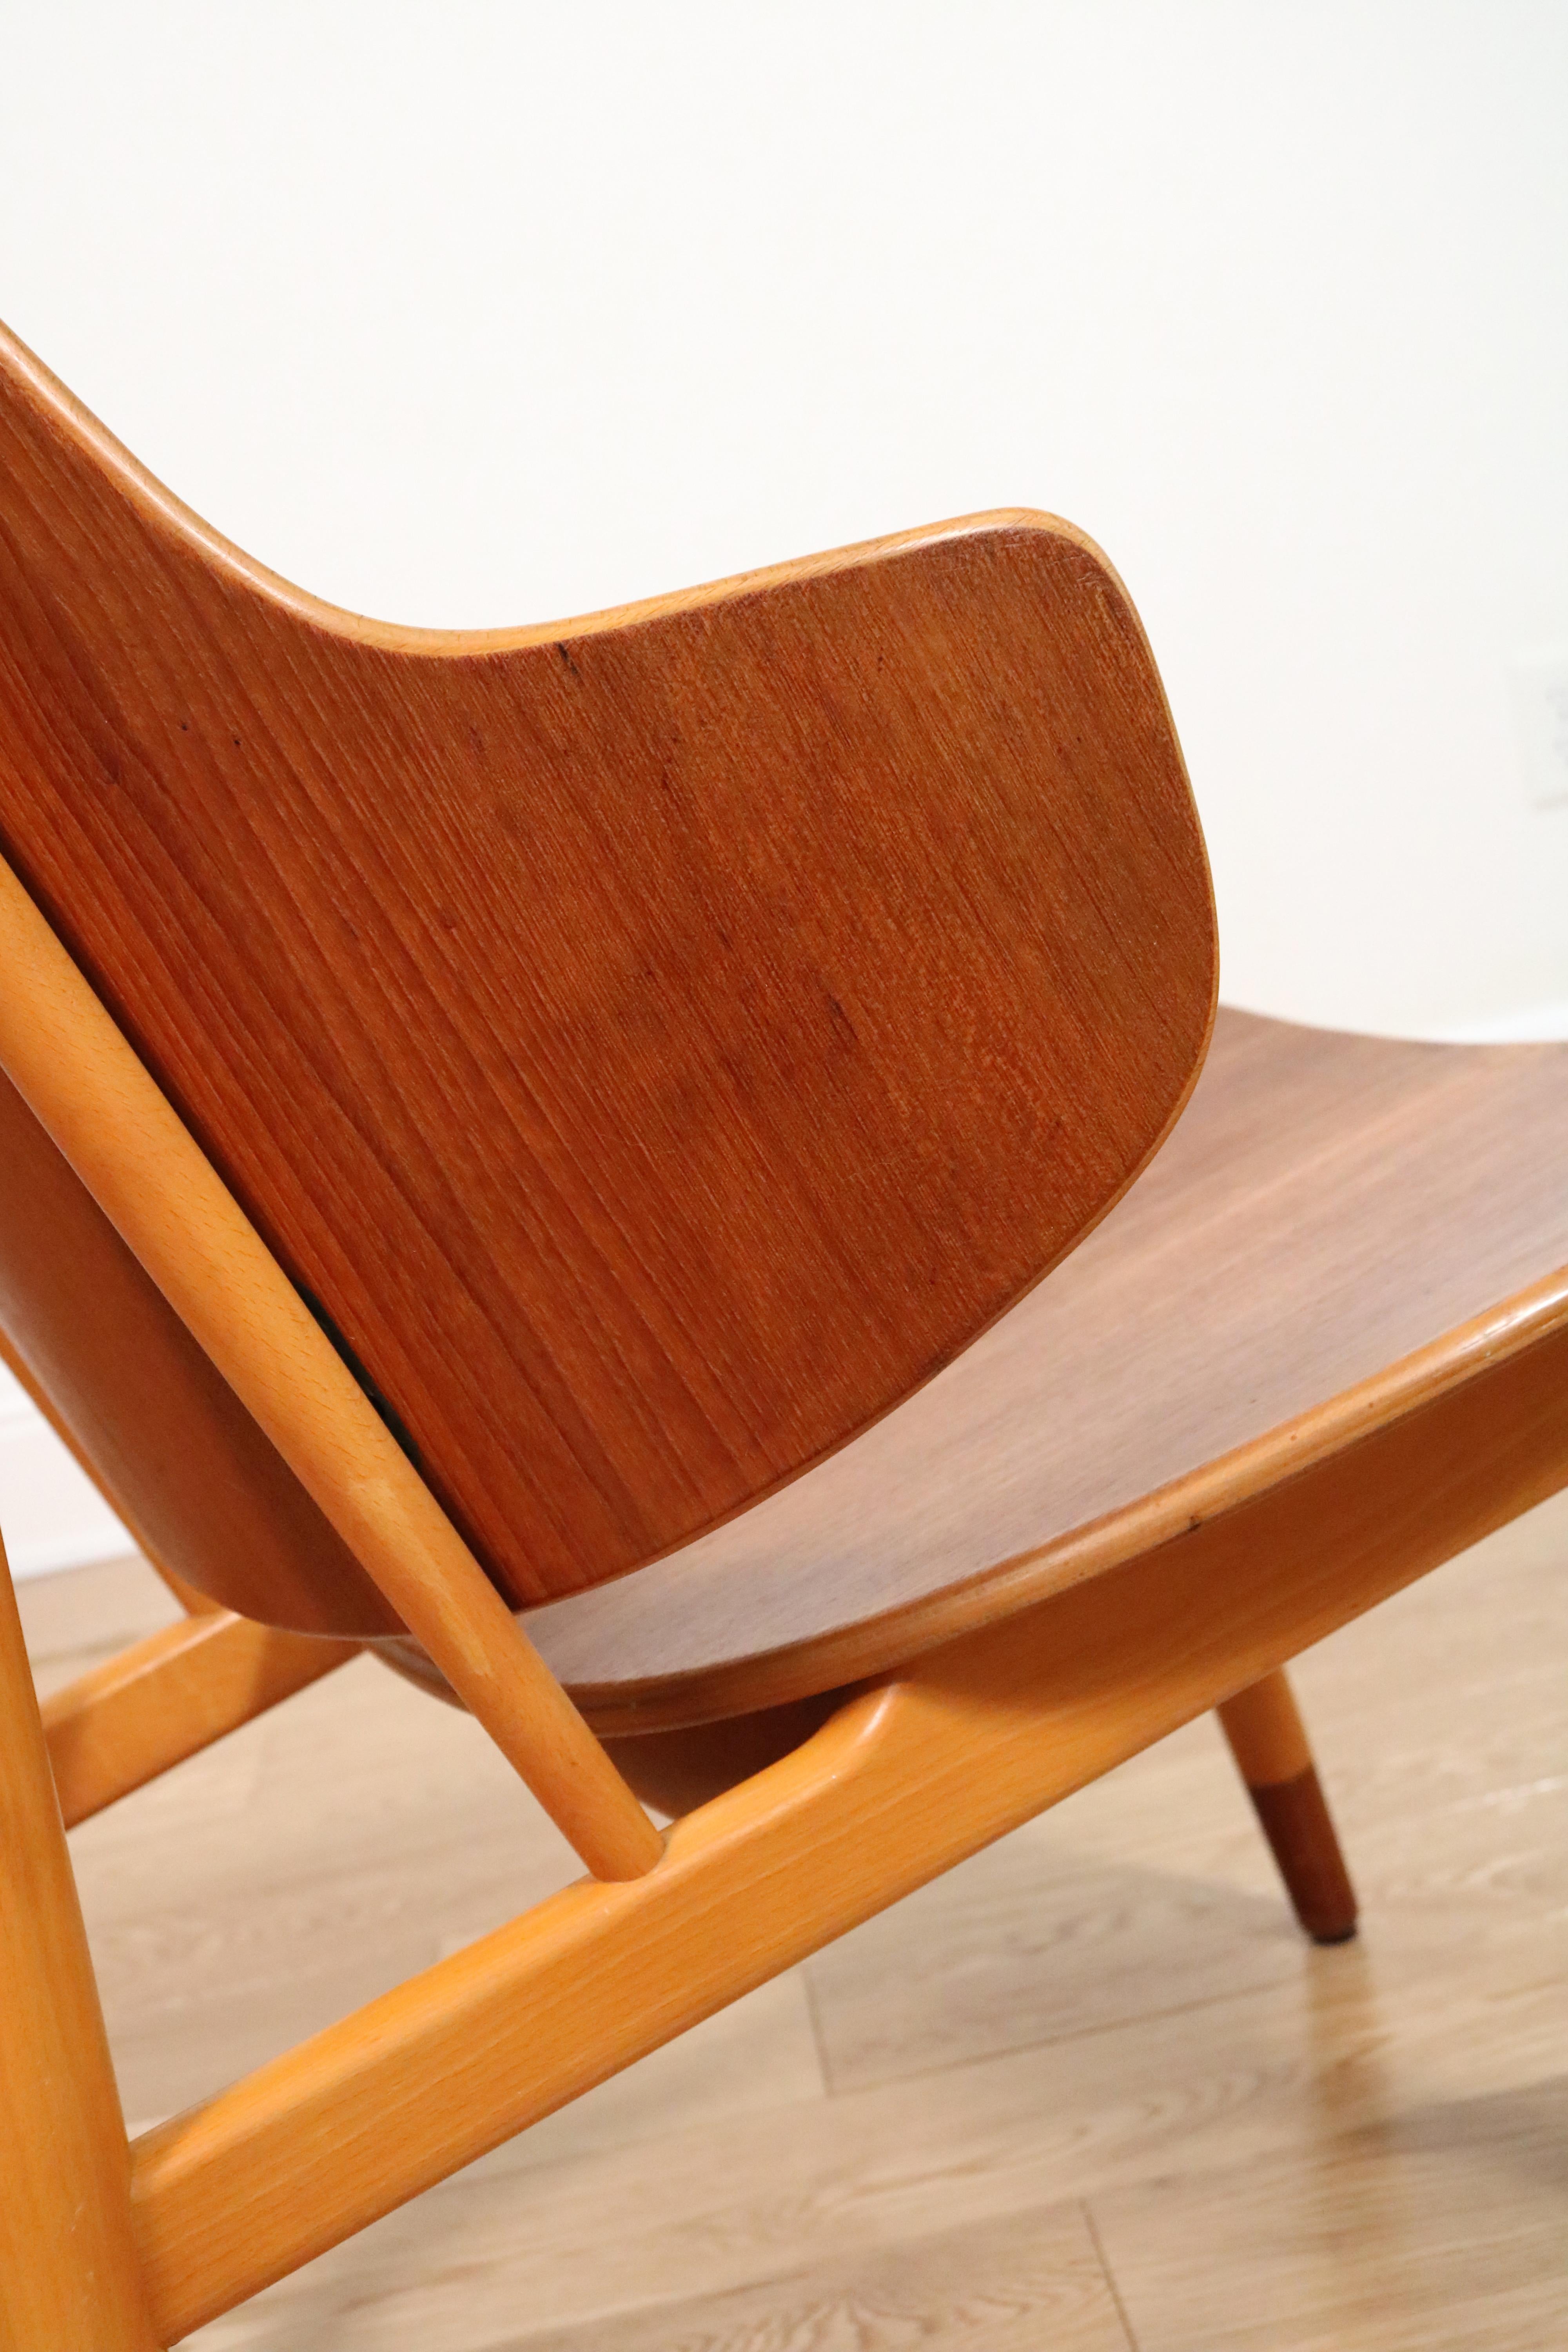 Kofod-Larsen Penguin Chair For Sale 8